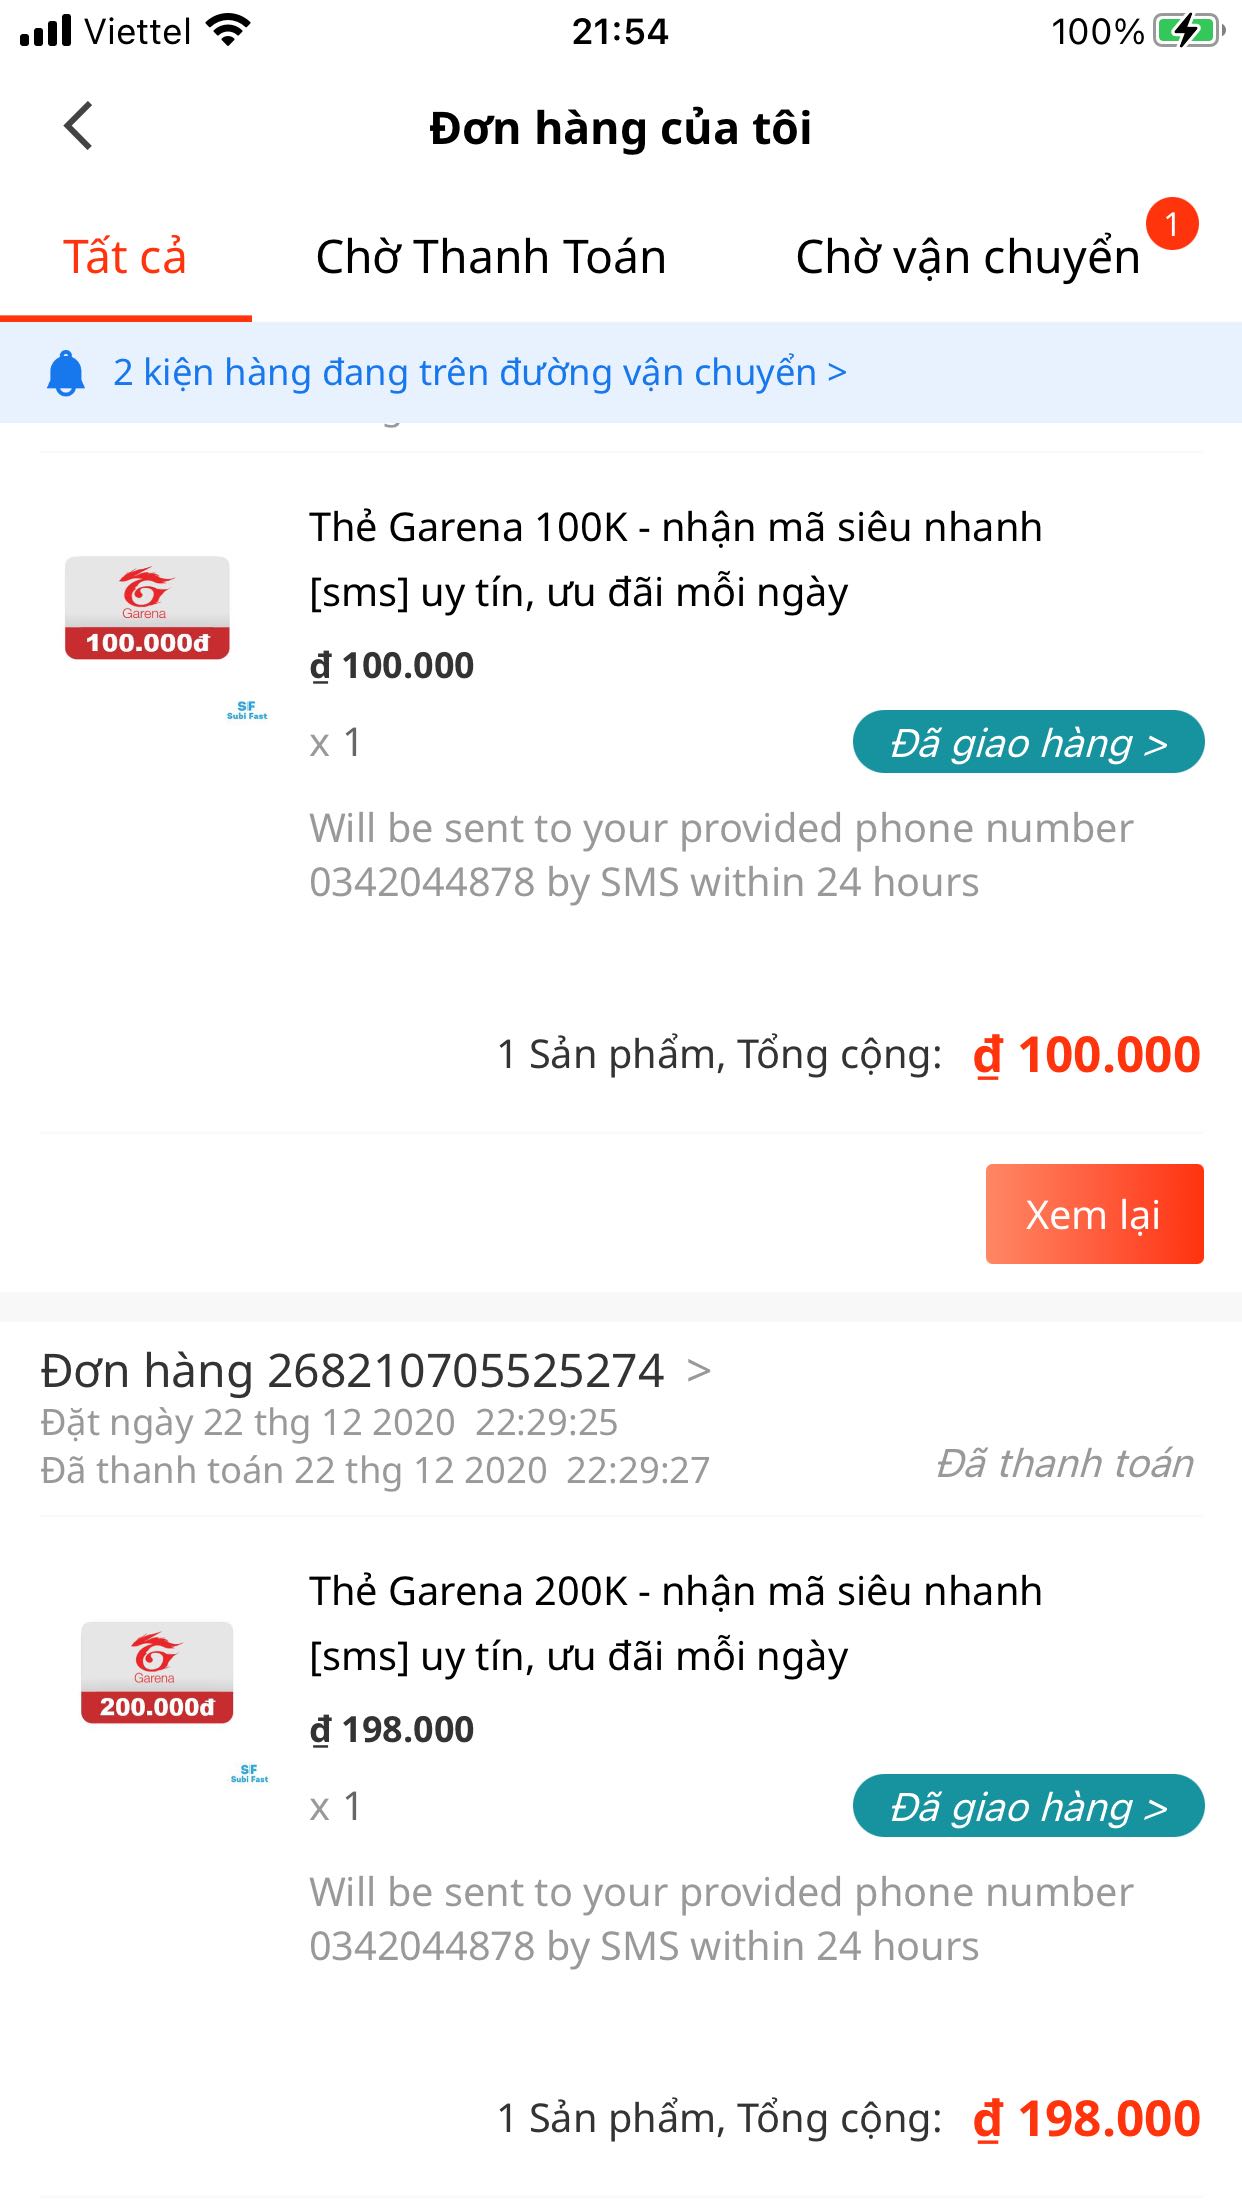 Thẻ Garena 500k: Thẻ Garena 500k sẽ giúp bạn không bỏ lỡ bất kỳ trò chơi online nào, với số tiền này, bạn có thể mua các vật phẩm trong game mà mình yêu thích và tăng cường khả năng chiến đấu. Đừng chần chừ mà hãy xem hình ảnh thẻ Garena 500k để biết thêm thông tin chi tiết.